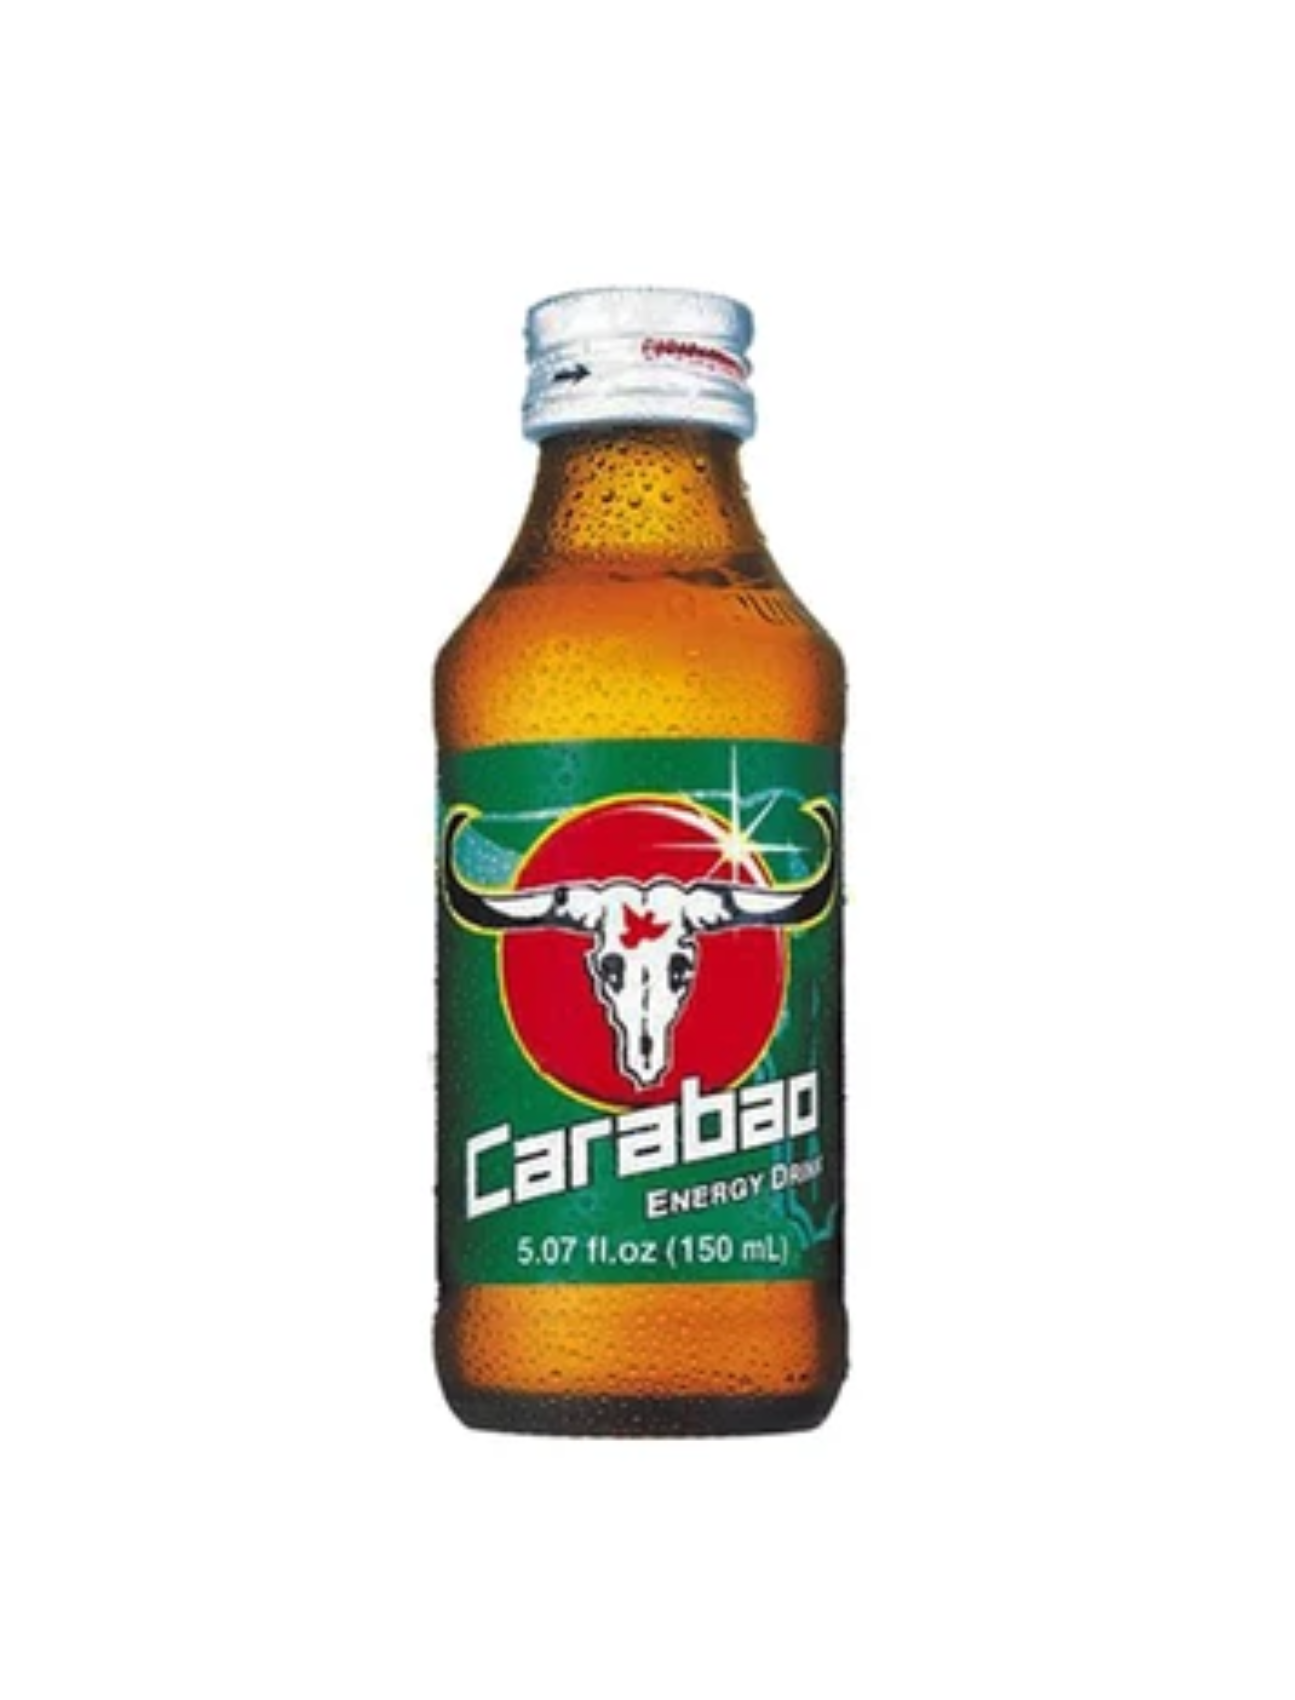 Carabao Energy drink (150ml)